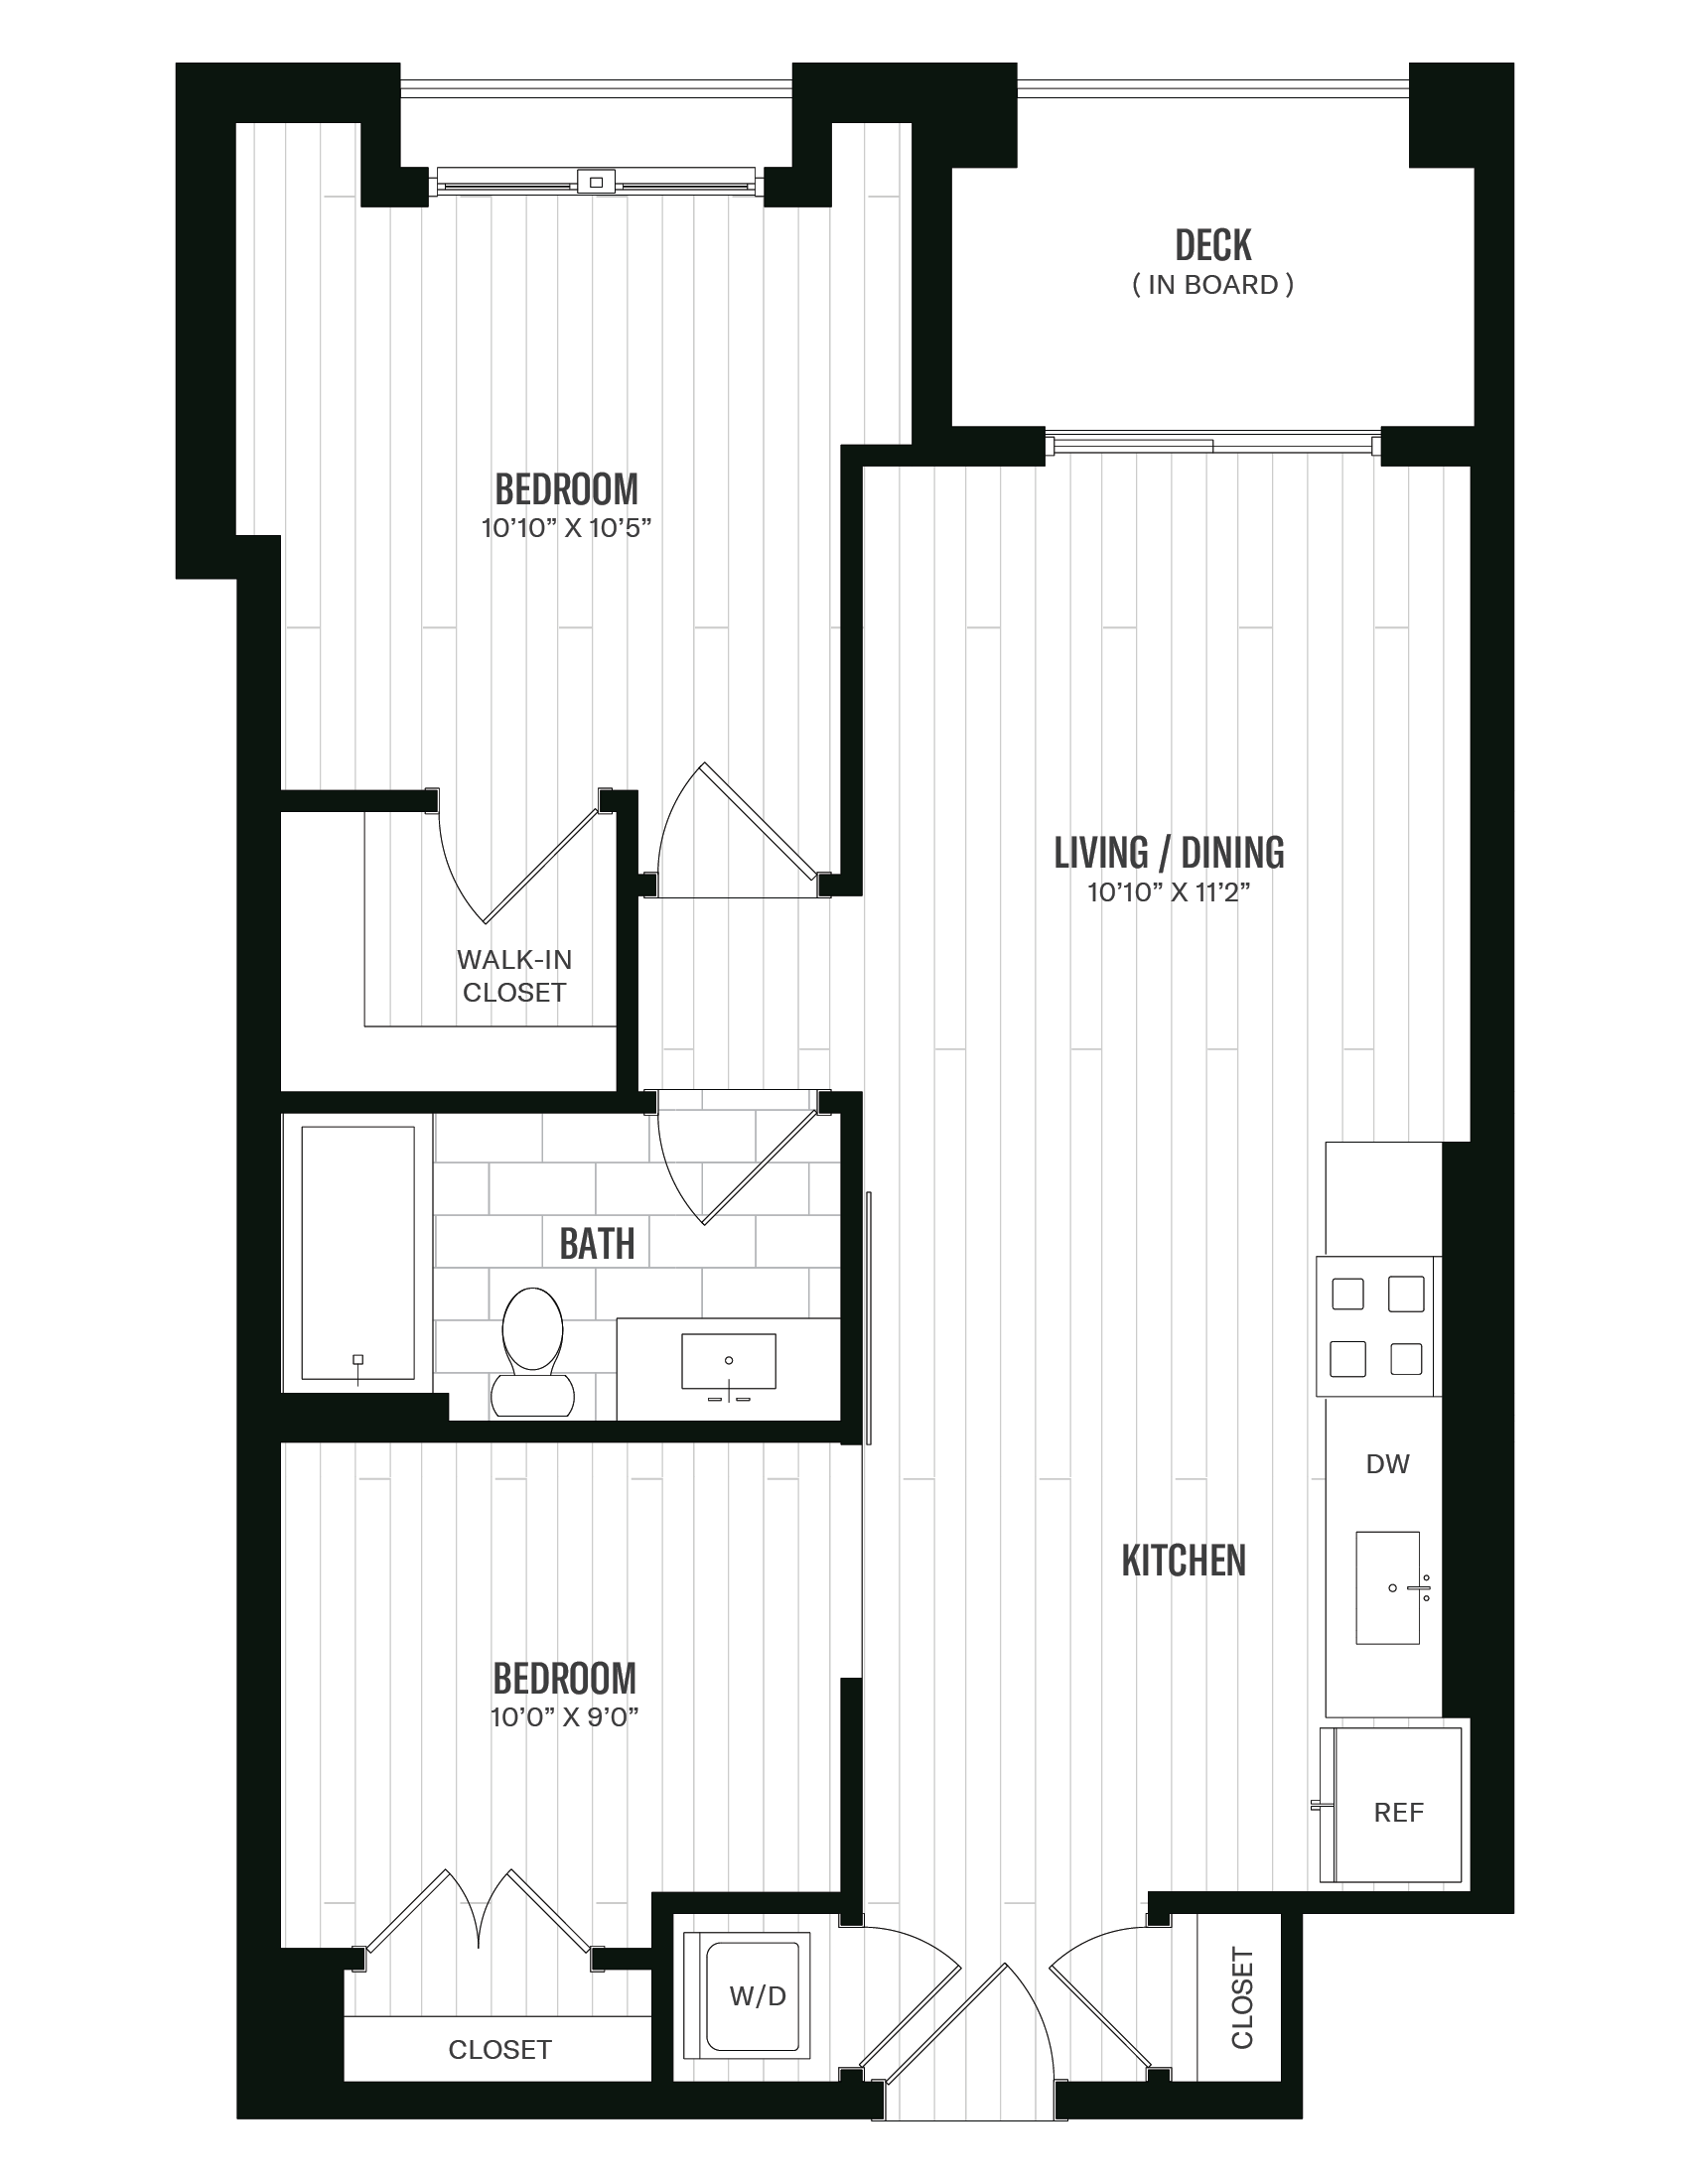 Floorplan image of unit 326